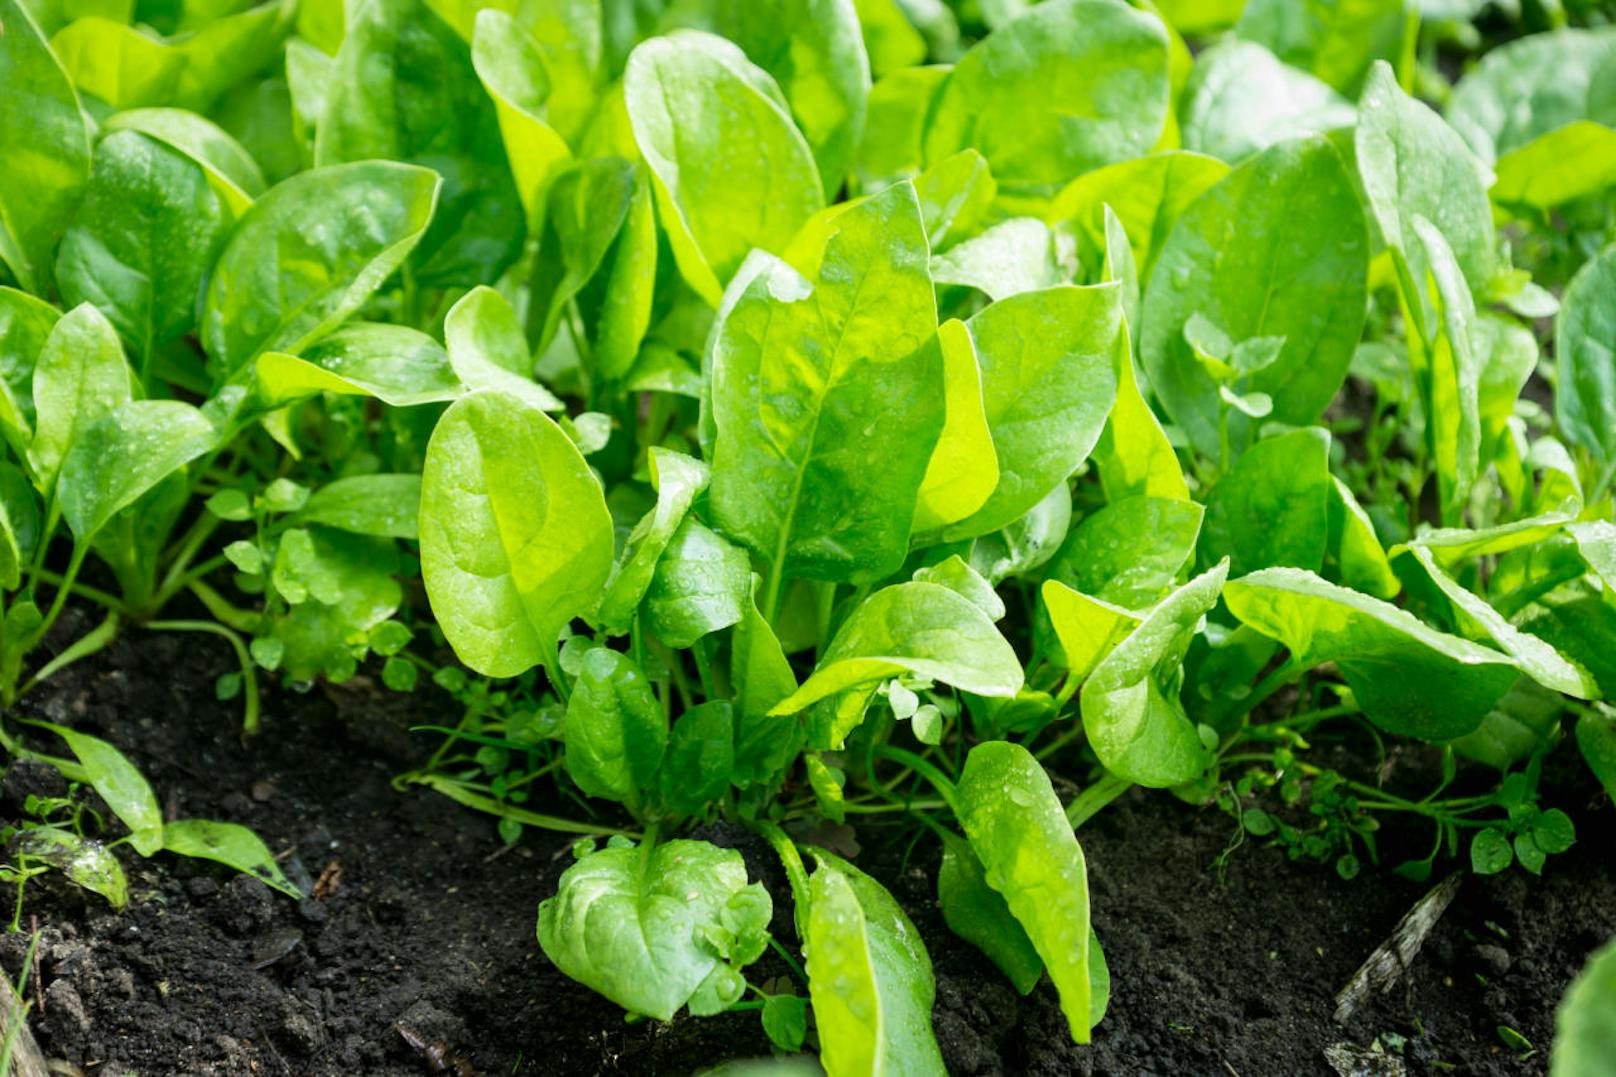 Spinat bevorzugt humose, lockere Böden, da er recht tief wurzelt. Damit die weichen Blätter nicht austrocknen sollte der Boden stets feucht sein. Er wächst sowohl an sehr sonnigen als auch an halbschattigen Orten. Allerdings besteht bei letzteren die Gefahr, dass sich gesundheitsschädliches Nitrat einlagert.